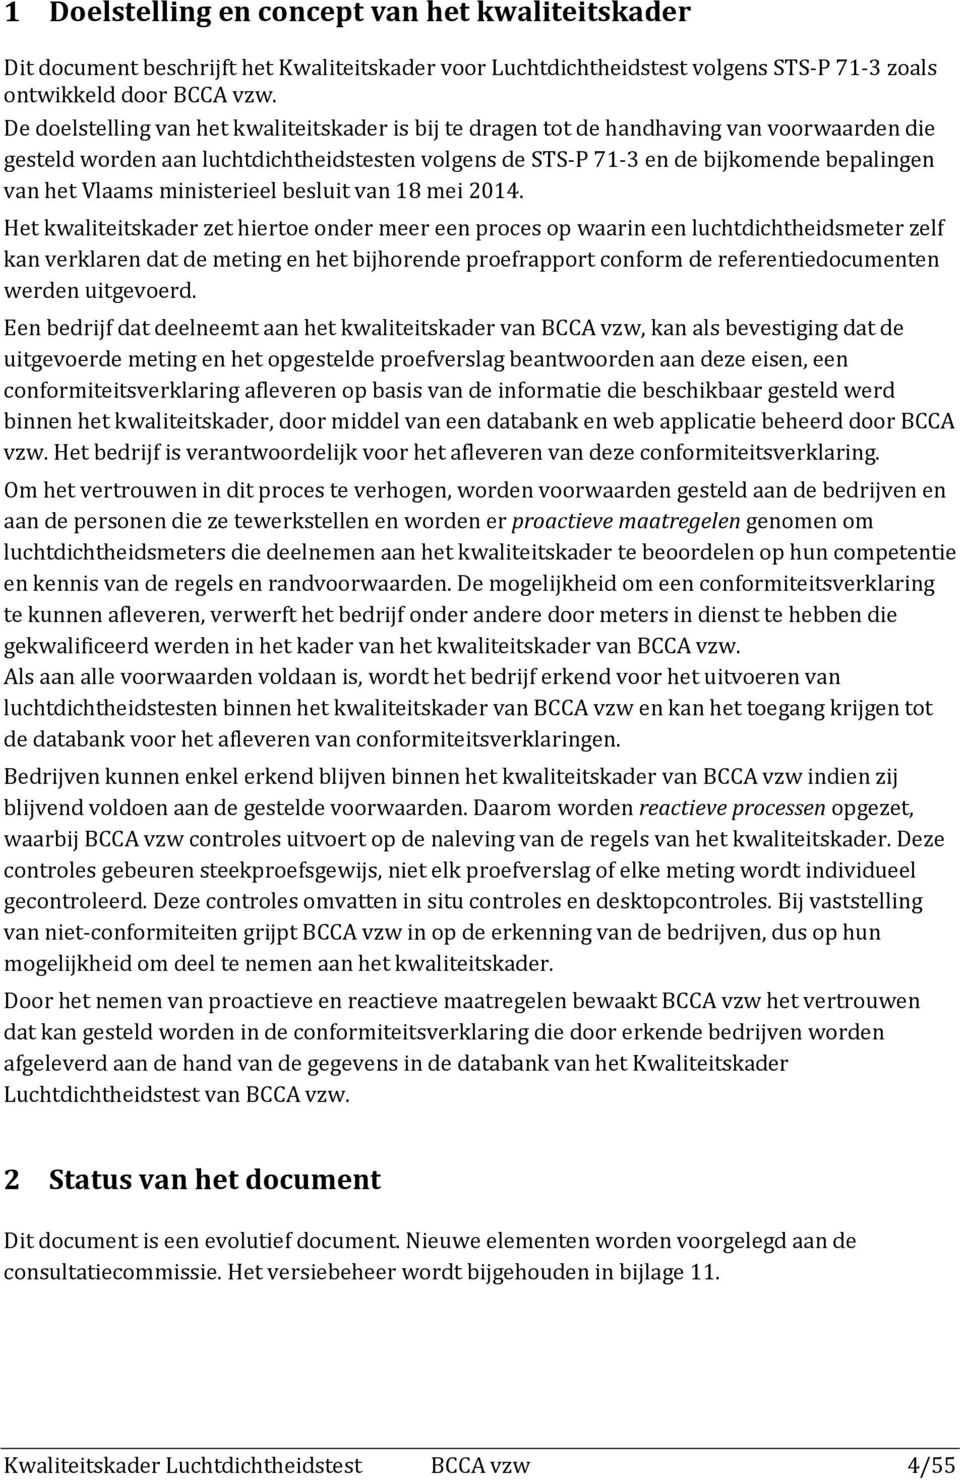 Vlaams ministerieel besluit van 18 mei 2014.